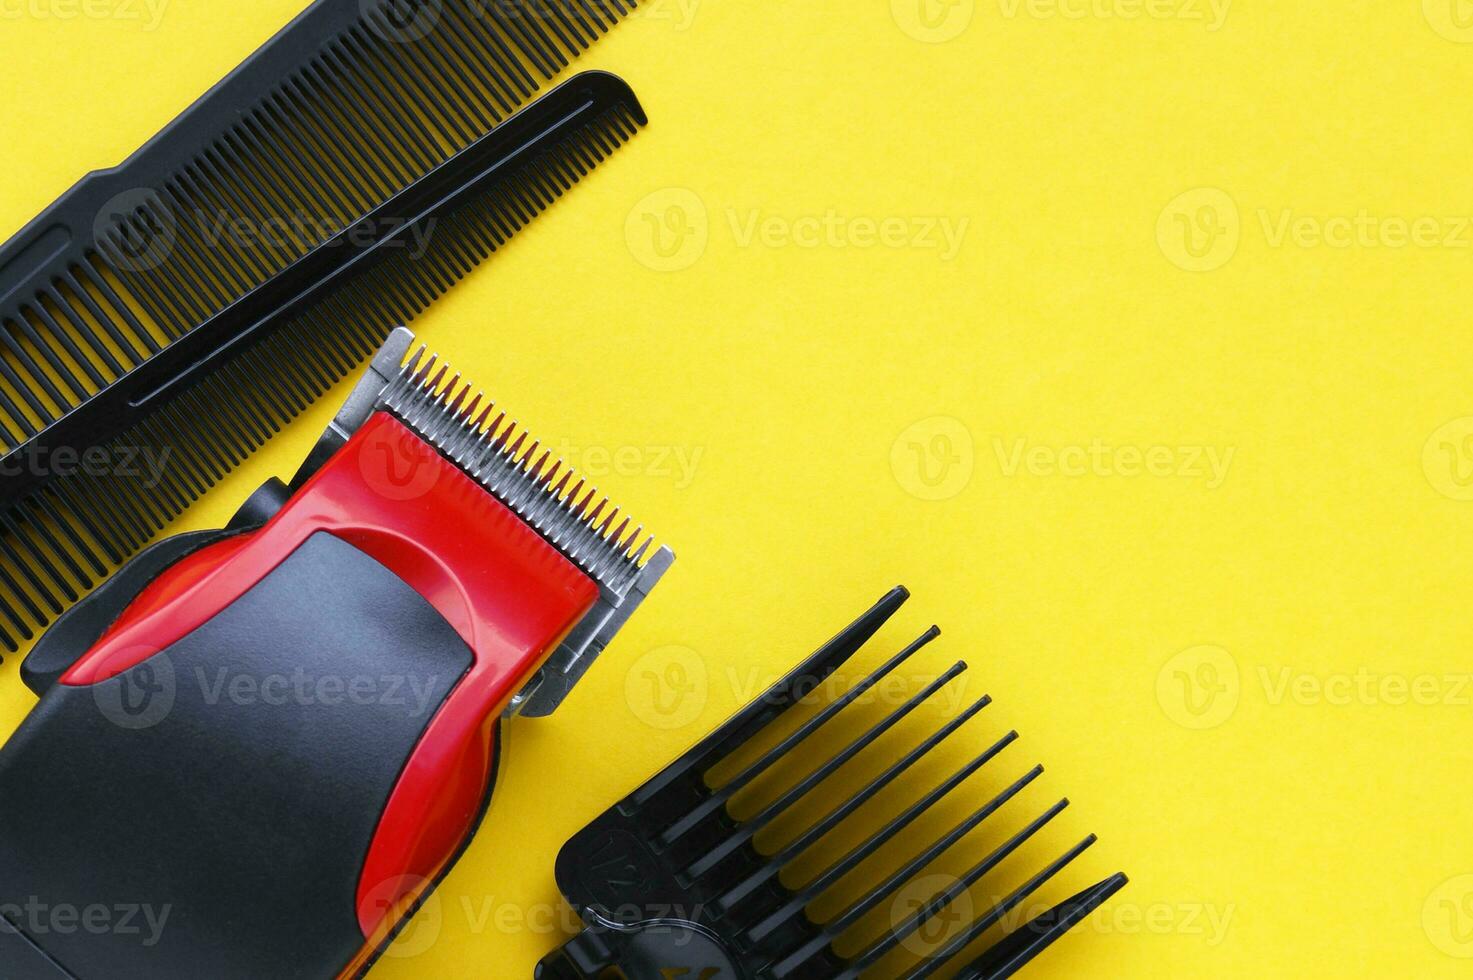 hår klippare närbild på en gul bakgrund med munstycken av annorlunda storlekar. foto